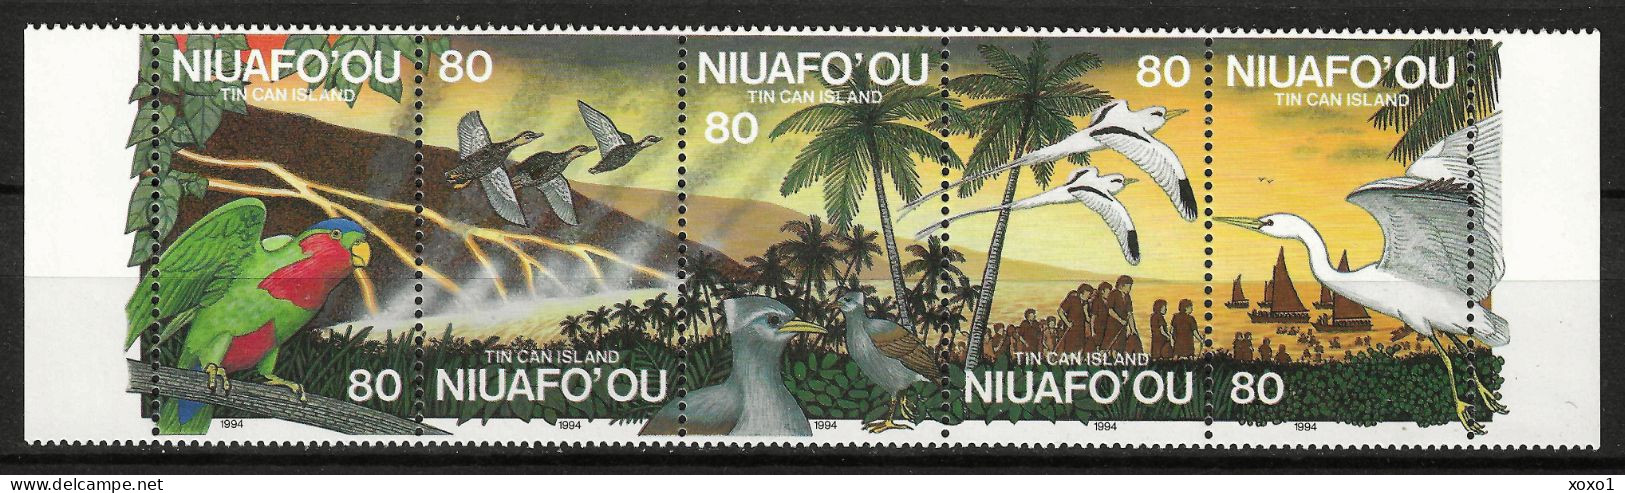 Niuafo'Ou 1994 MiNr. 269 - 273 Niuafo'ou-Insel Geology, Volcanos, Volcanic Eruption, Birds  5v MNH** 14,00 € - Volcanos